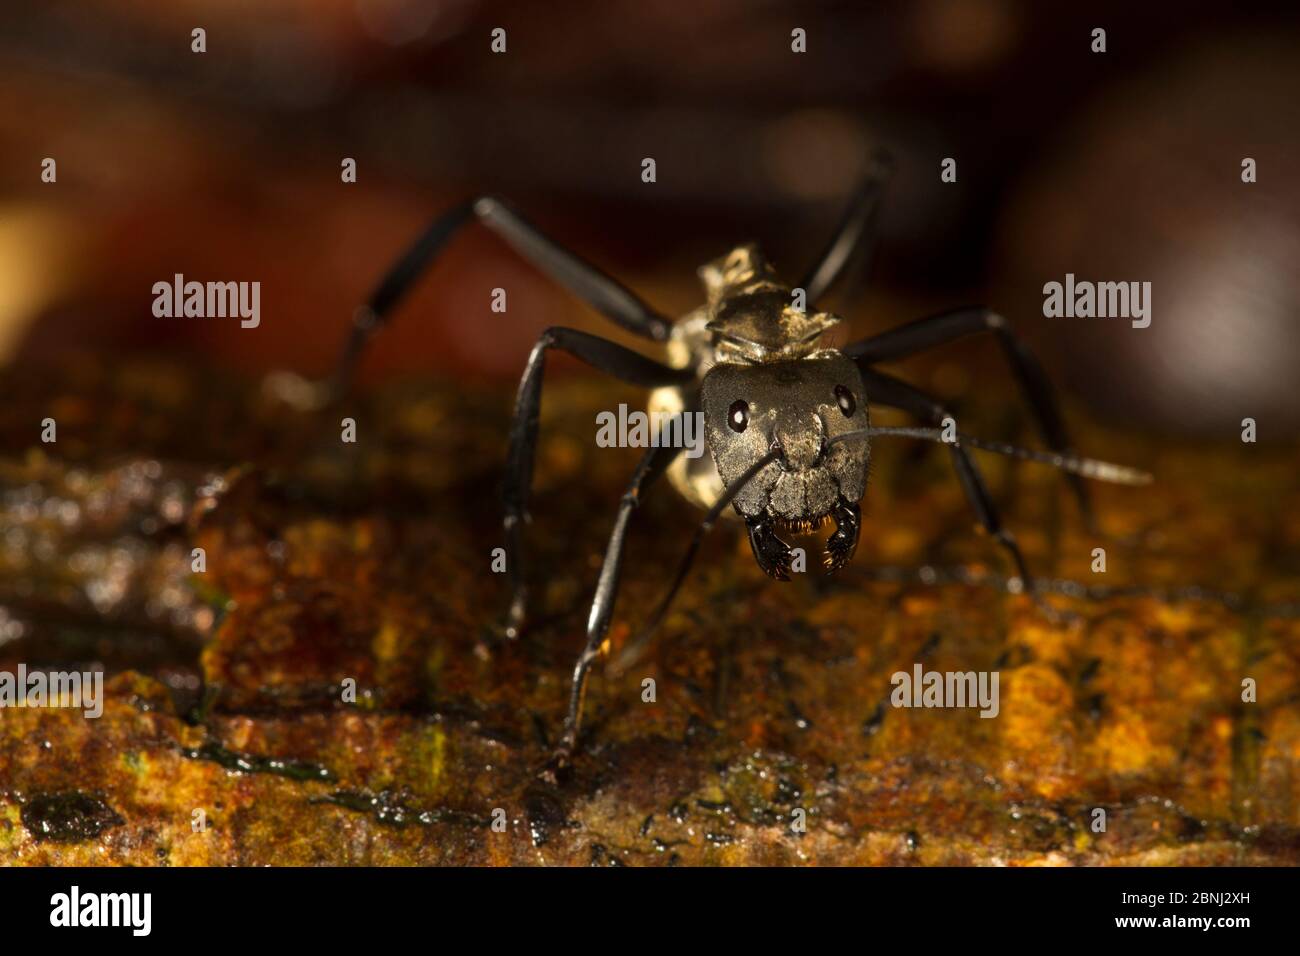 Carpenter ant (Camponotus sericeiventris) Barro Colorado Island, Gatun Lake, Panama Canal, Panama. Stock Photo